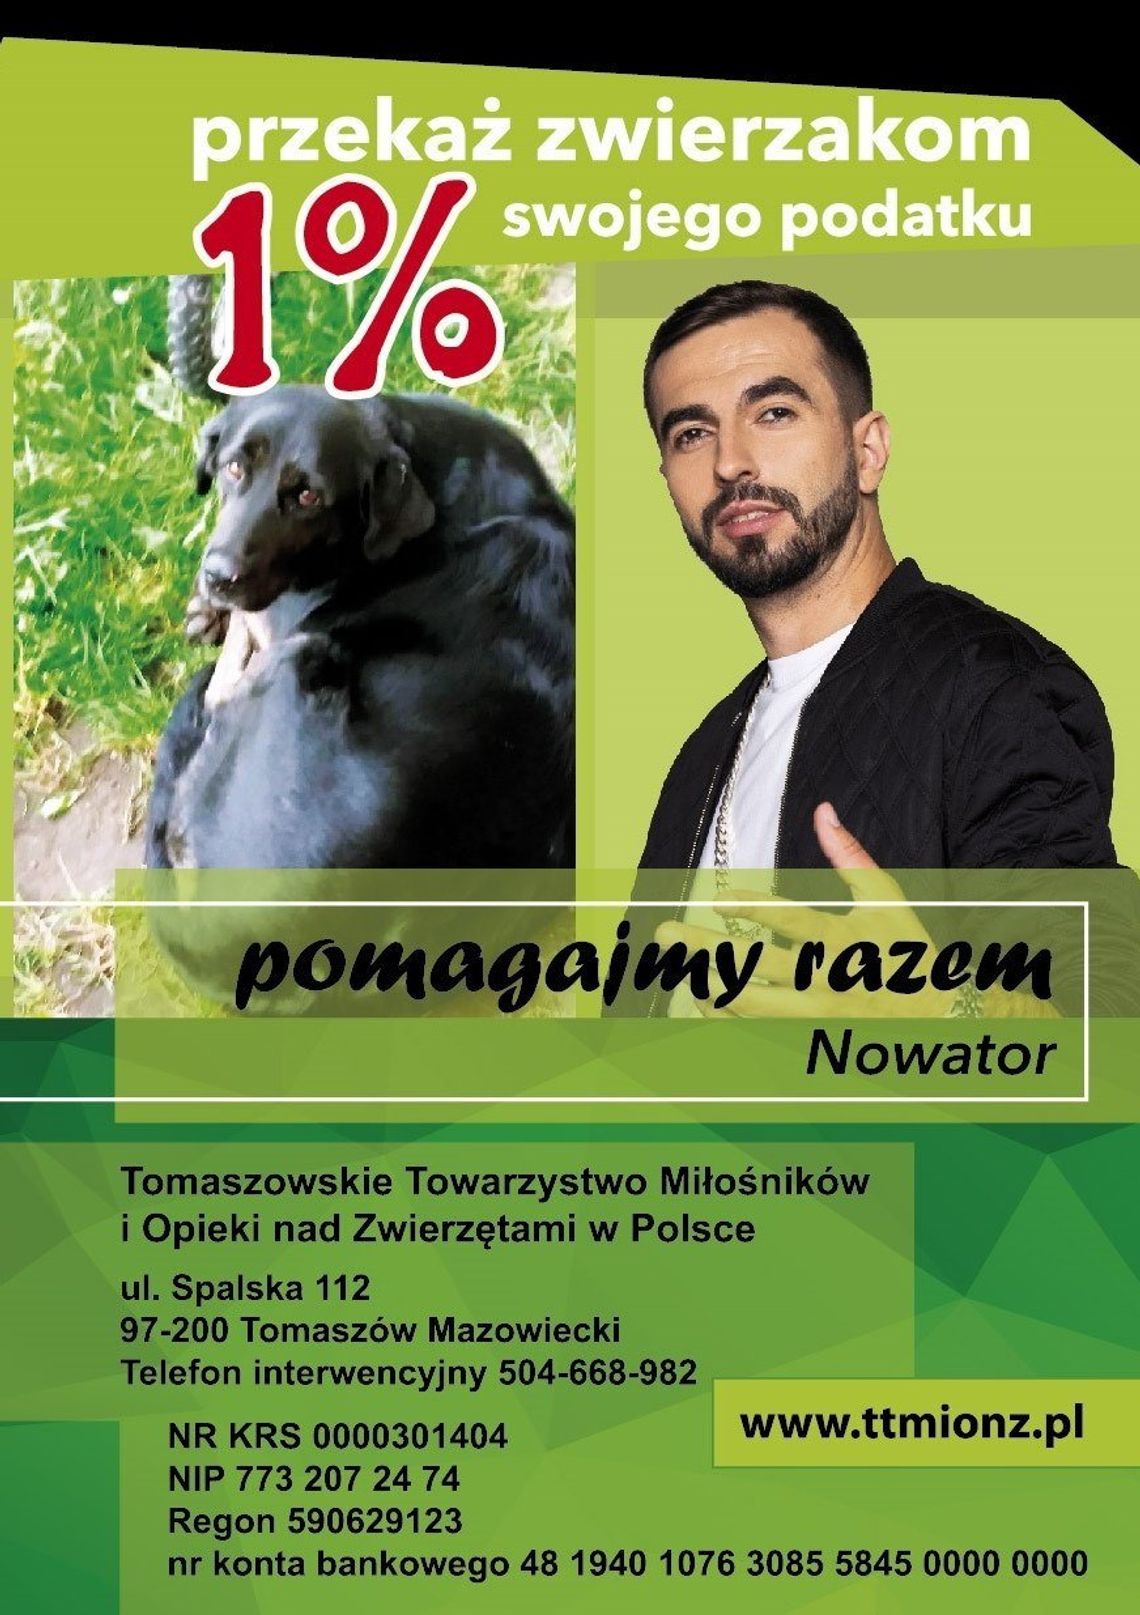 1% z Nowatorem